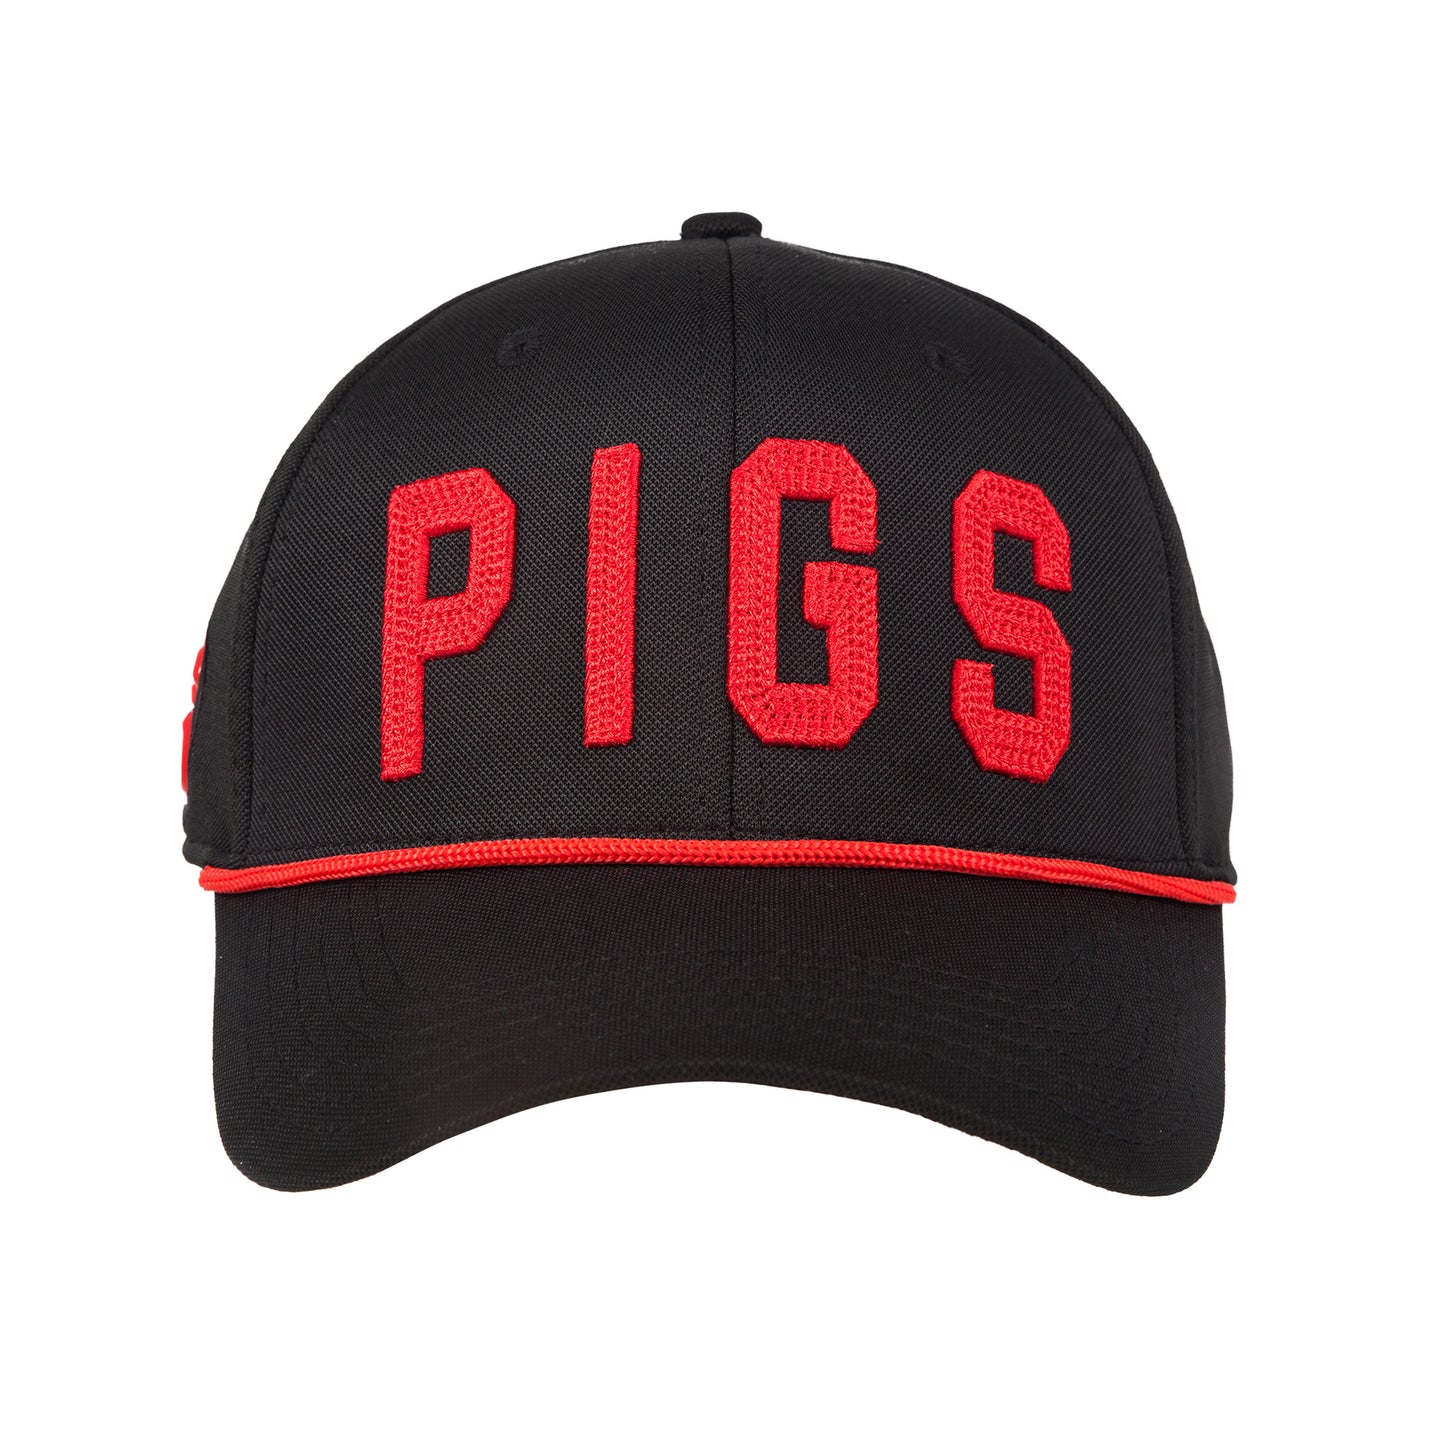 "OG" PIGS - Black - Snapback - Curved Bill